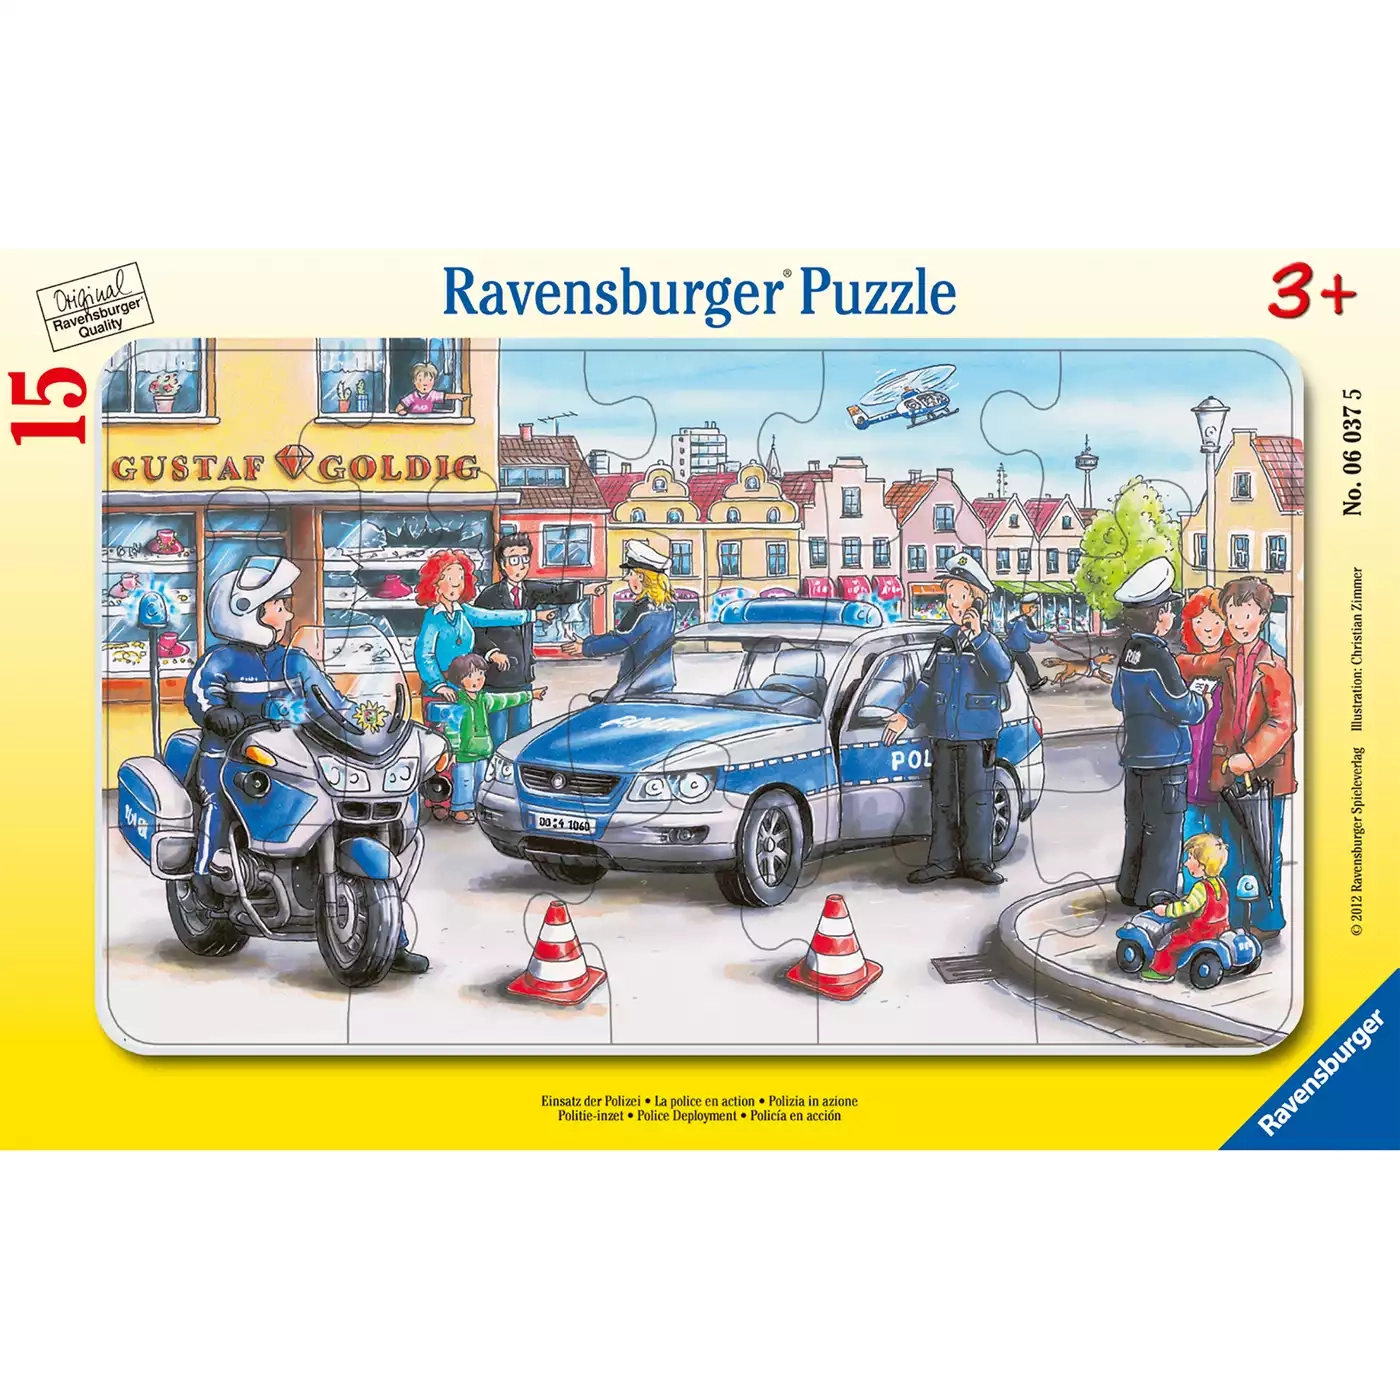 Kinderpuzzle Einsatz der Polizei Ravensburger 2000555031809 1